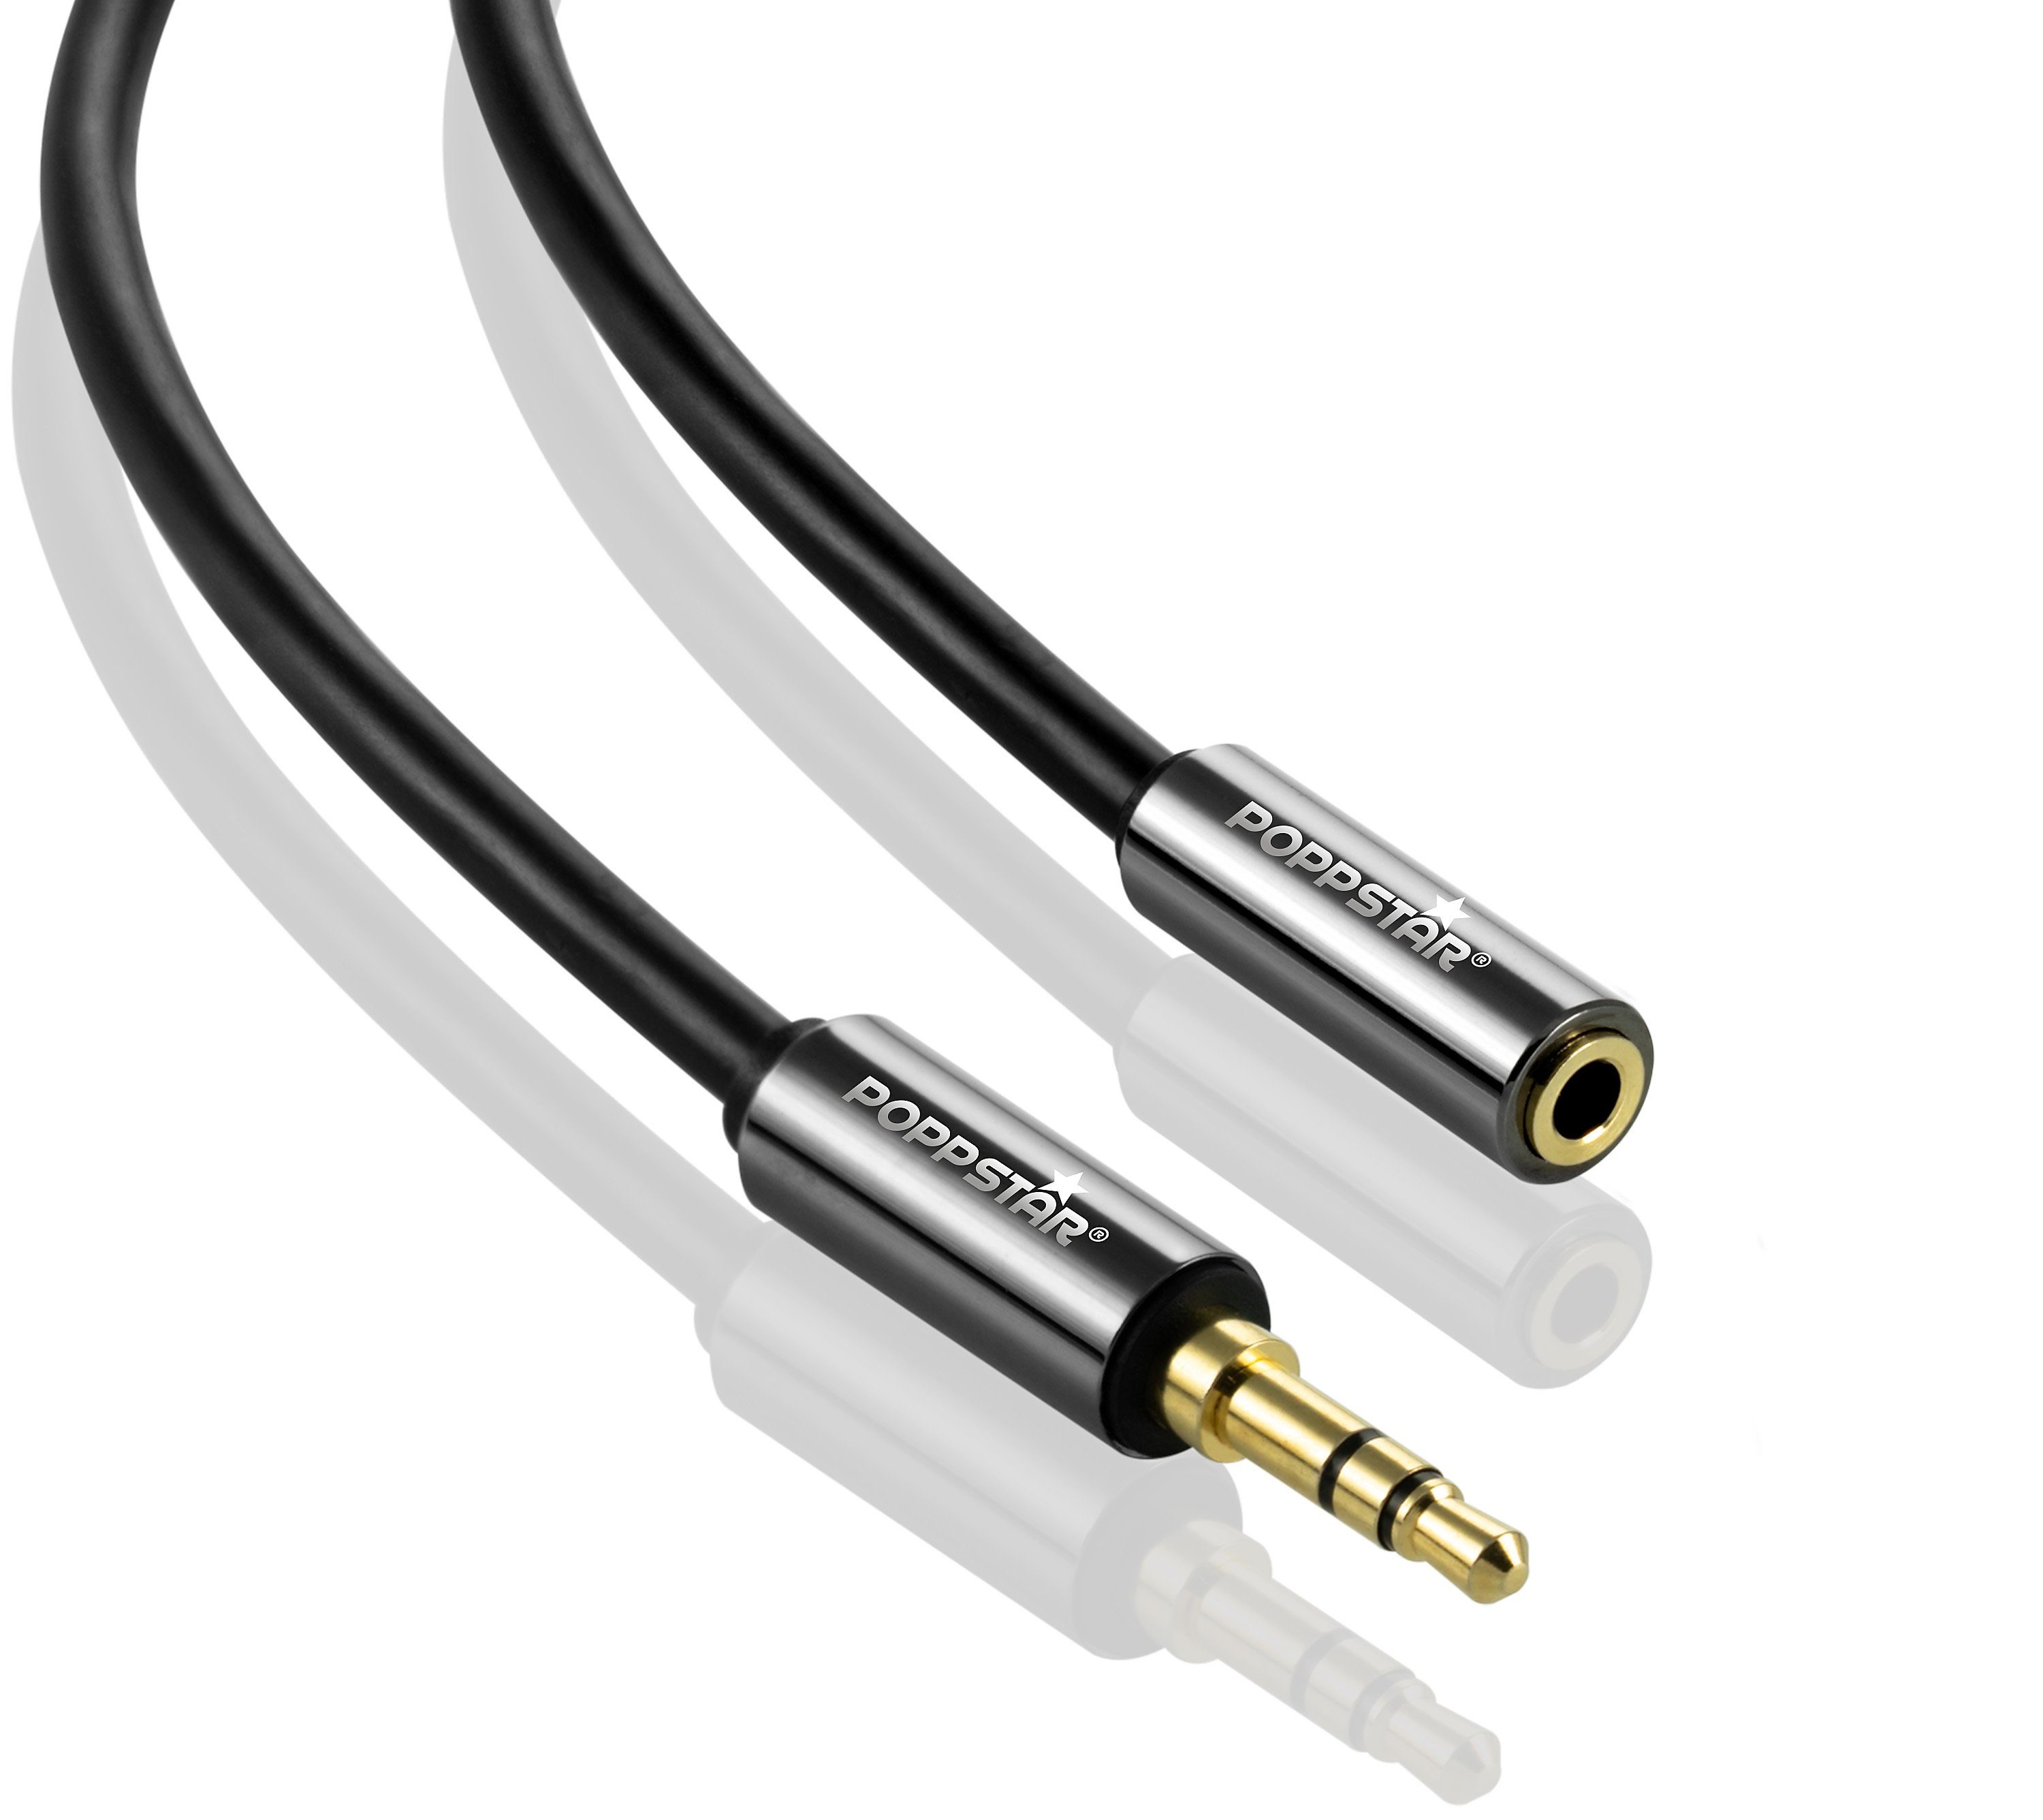 Poppstar Audio Kabel Klinke 3,5mm Klinkenkabel Stecker auf Buchse  Audio-Kabel, 3,5-mm-Klinke, 3,5-mm-Klinke (100 cm), Verlängerungskabel für  Kopfhörer Smartphone MP3-Player Kfz Autoradio